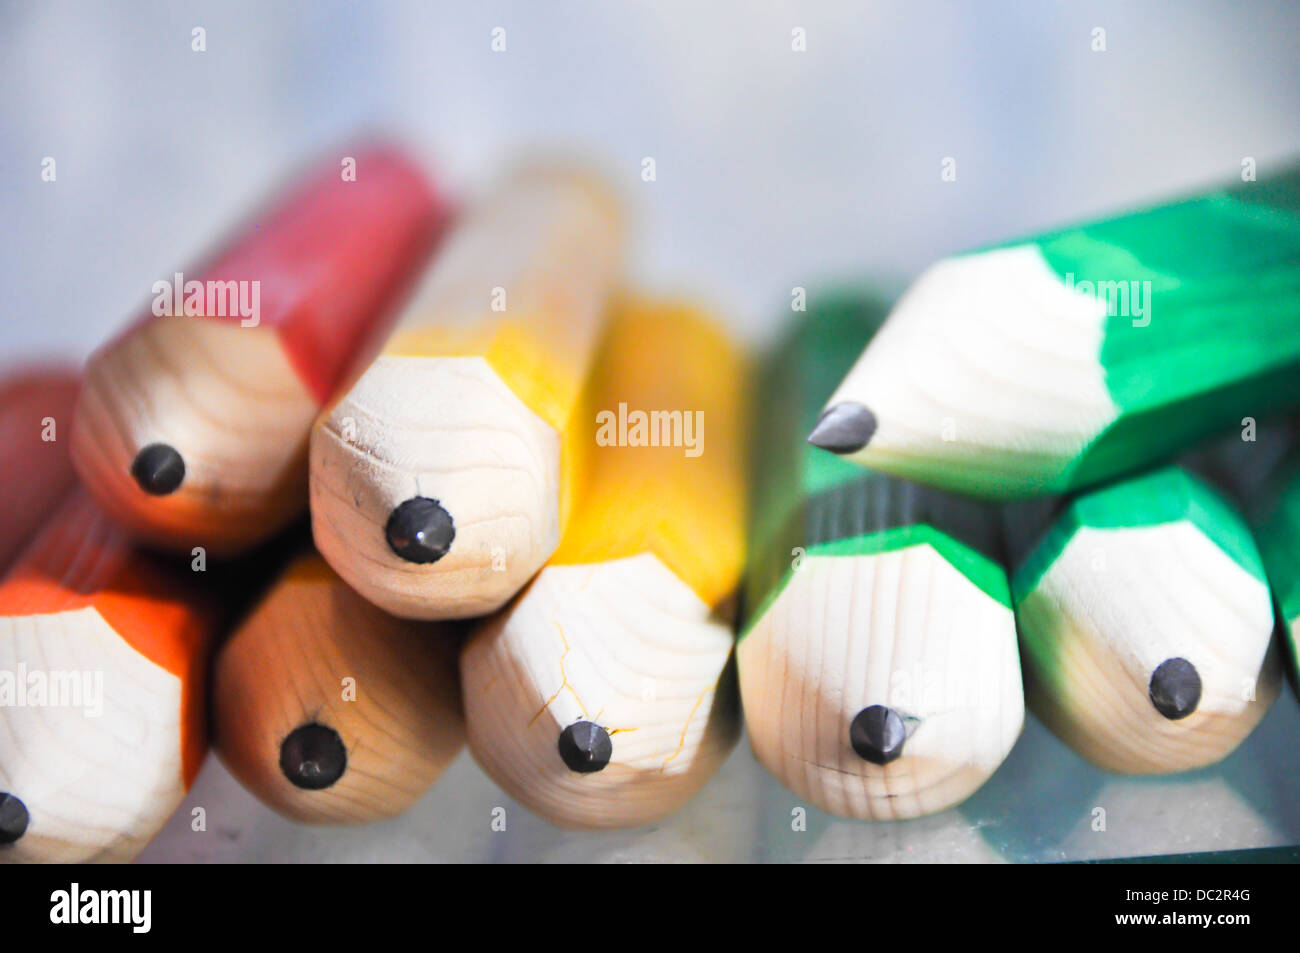 Sharp matite colorate. Chiudere il fuoco selettivo Foto Stock